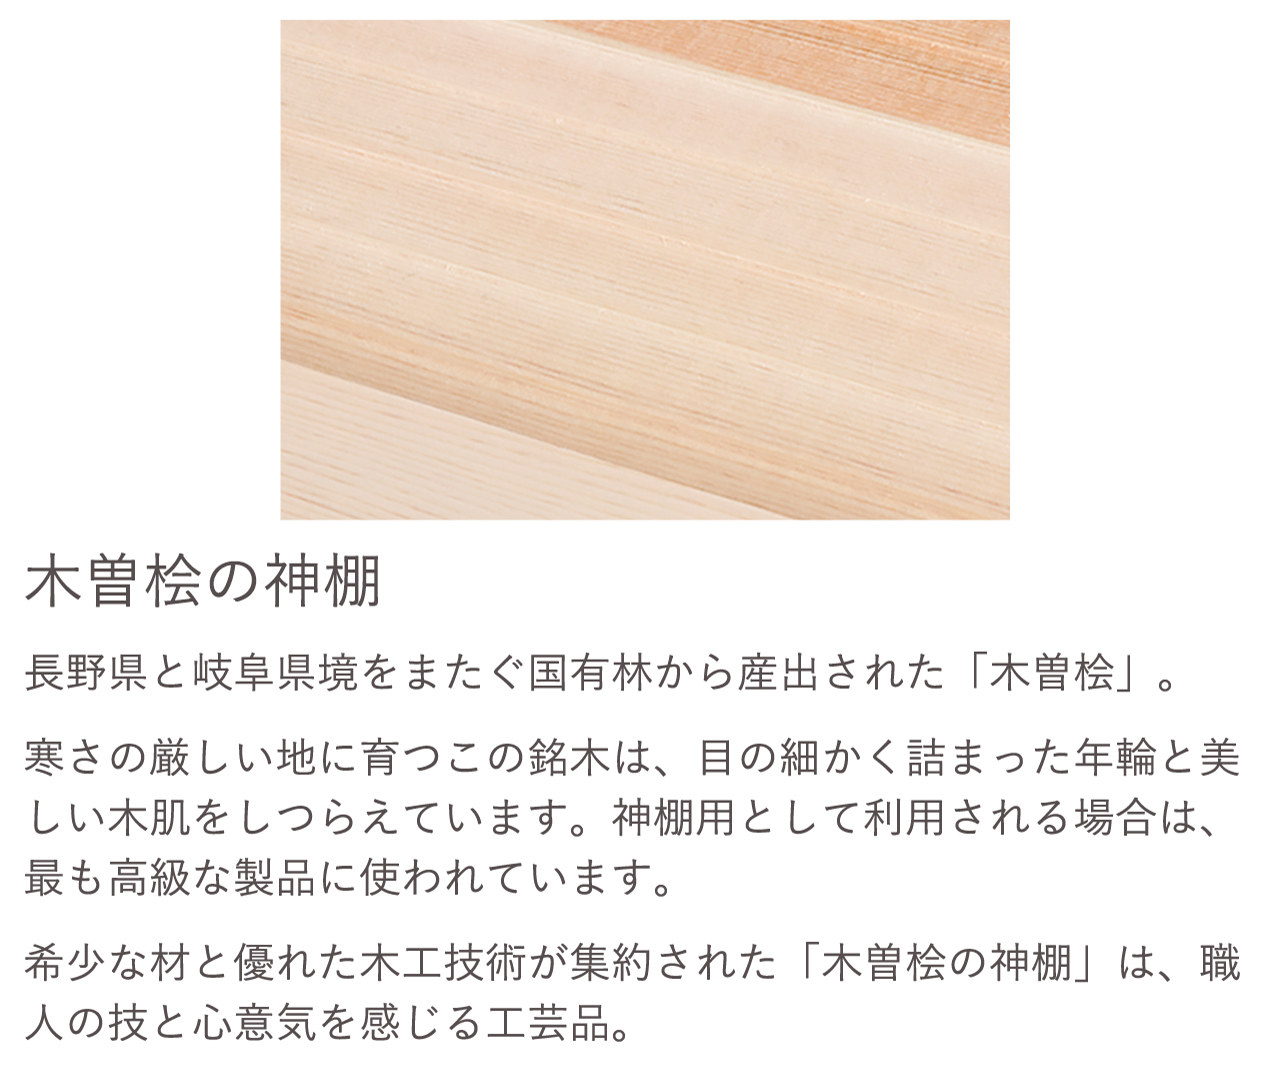 長野県と岐阜県境をまたぐ国有林から産出された「木曽桧」。希少な材と優れた木工技術が集約された「木曽桧の神棚」は、職人の技と心意気を感じる工芸品。